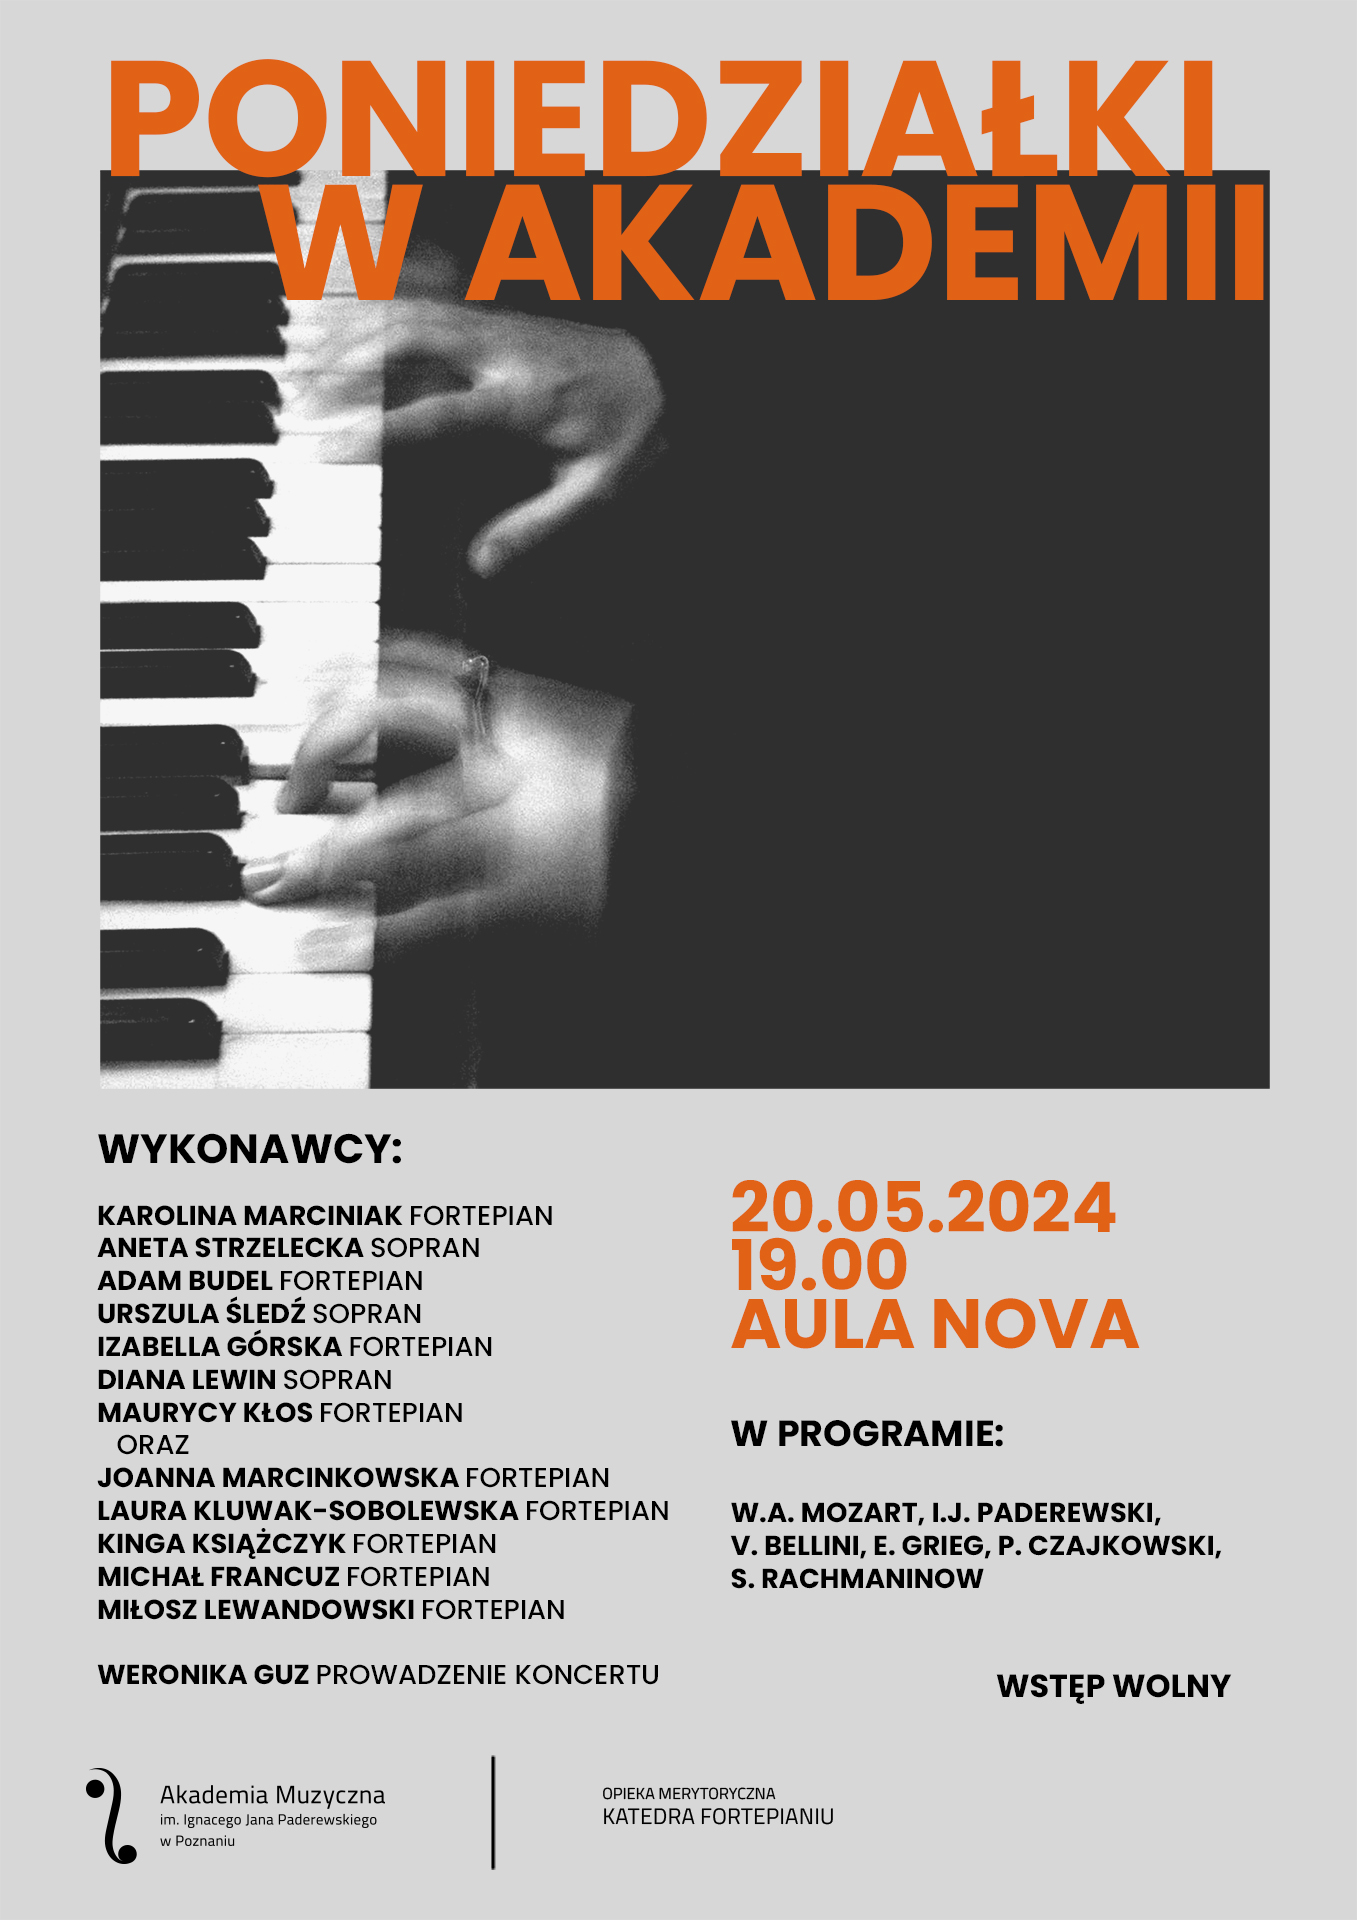 Plakat zawiera lekko rozmytą grafikę - dłonie na klawiaturze, a także informacje na temat wykonawców koncertu w dniu 20 maja 2024 w ramach cyklu PONIEDZIAŁKI W AKADEMII